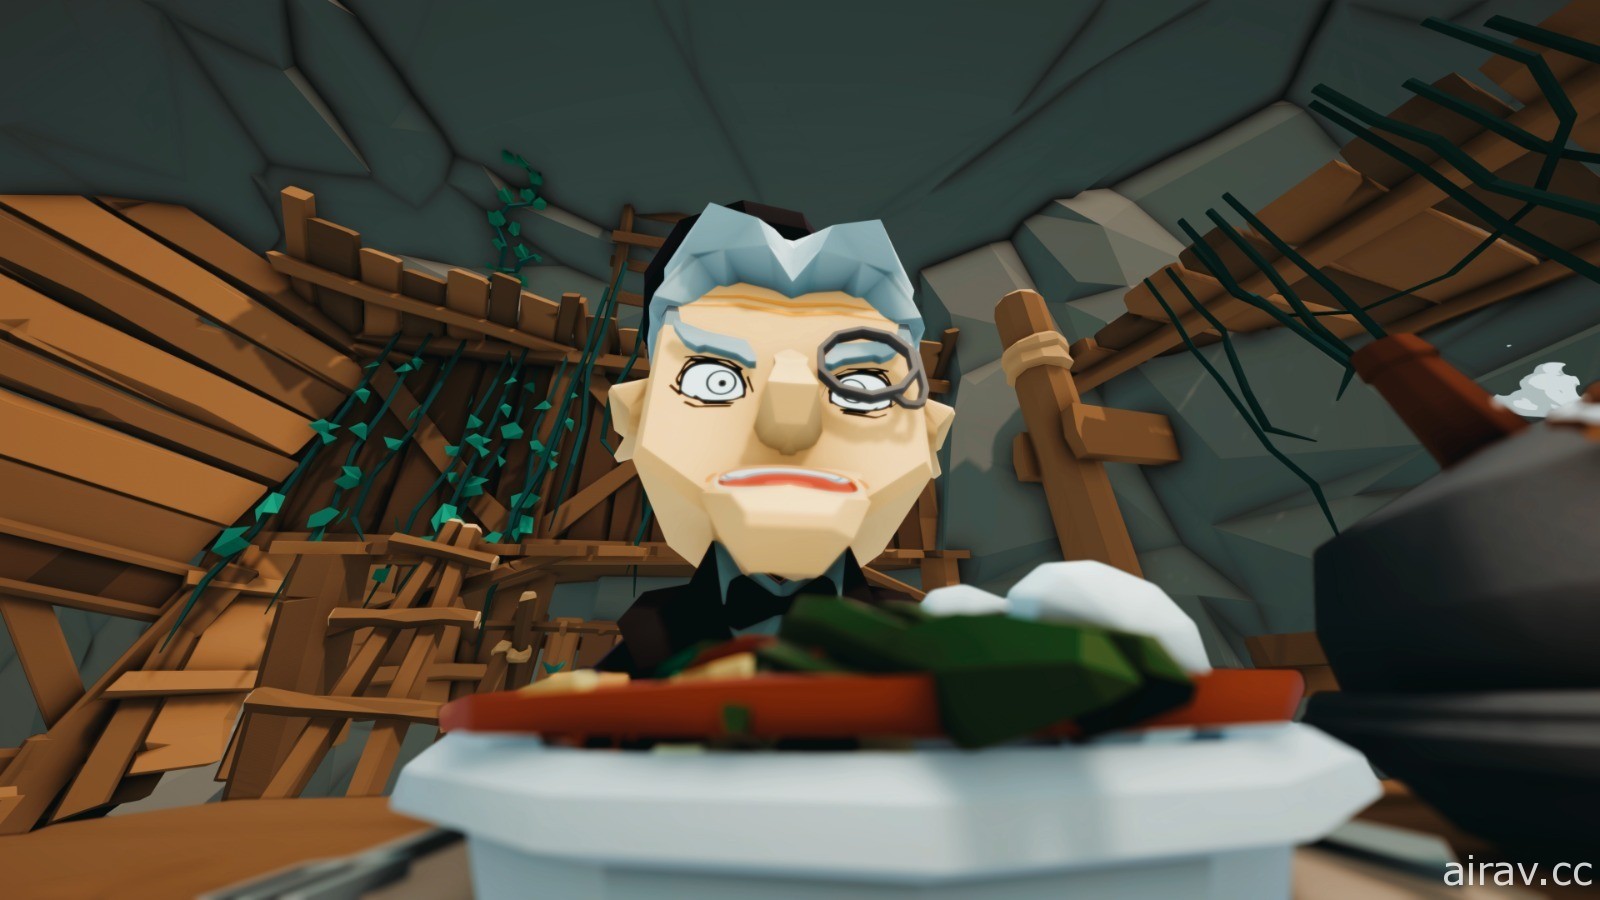 烹飪冒險遊戲《傳說廚師 Epic Chef》即將於各主機平台上演廚藝對決